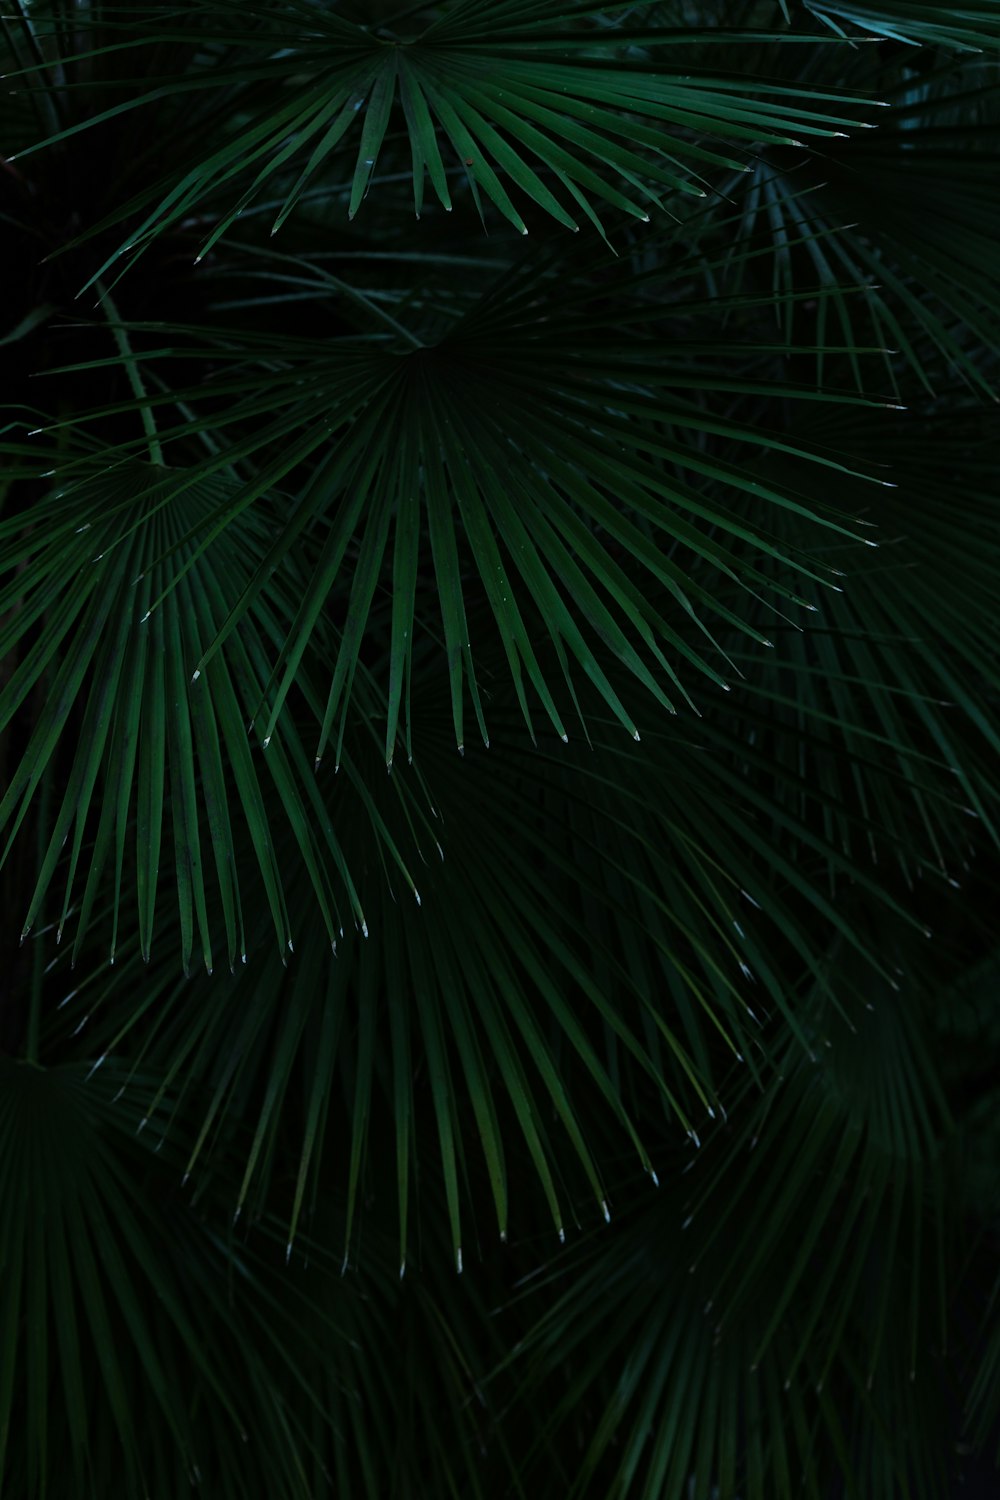 palmier vert pendant la nuit